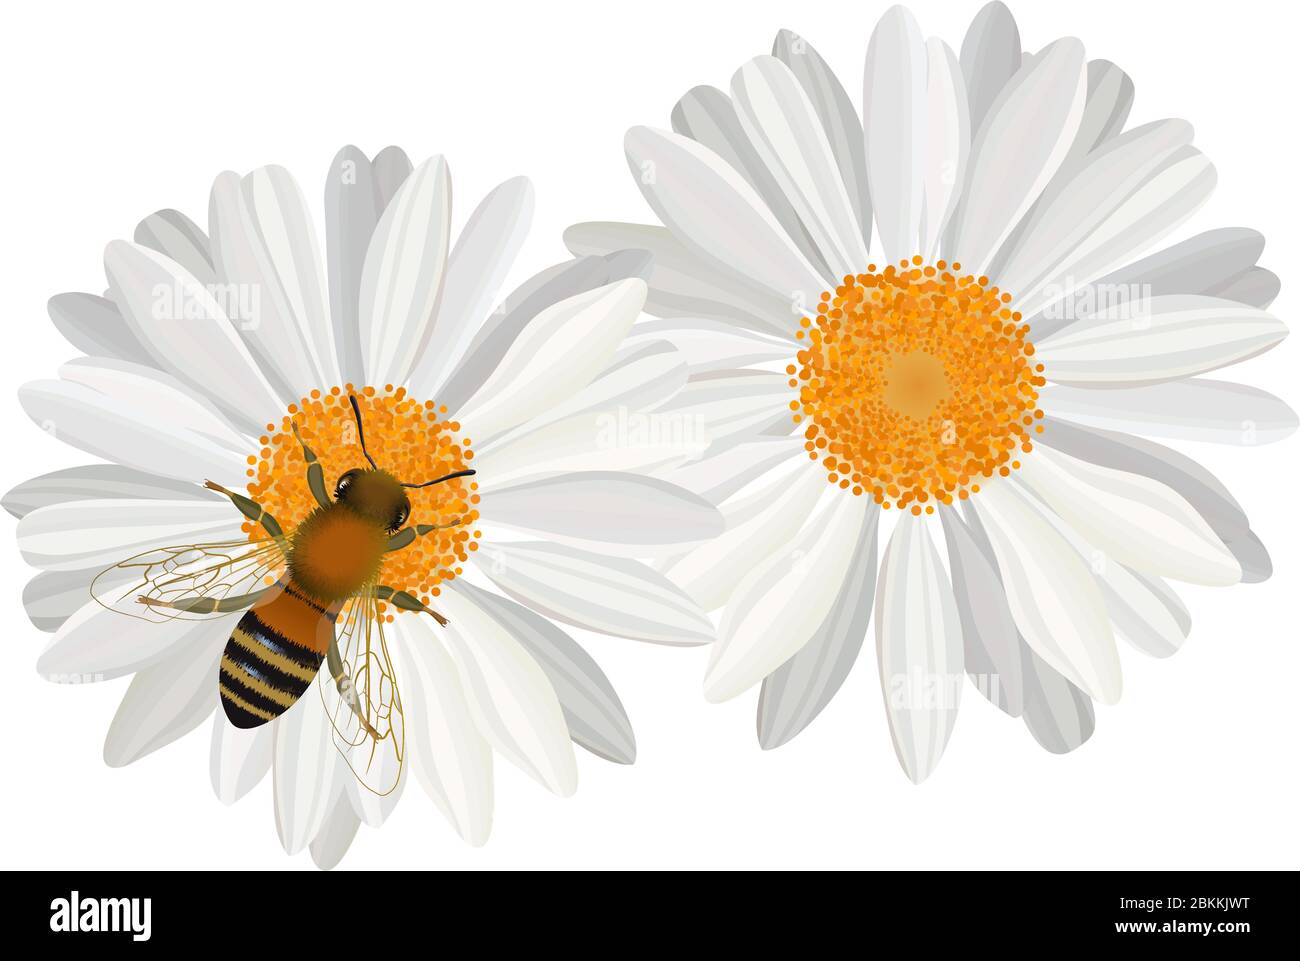 Vue rapprochée de l'abeille sur la fleur de camomille Illustration de Vecteur